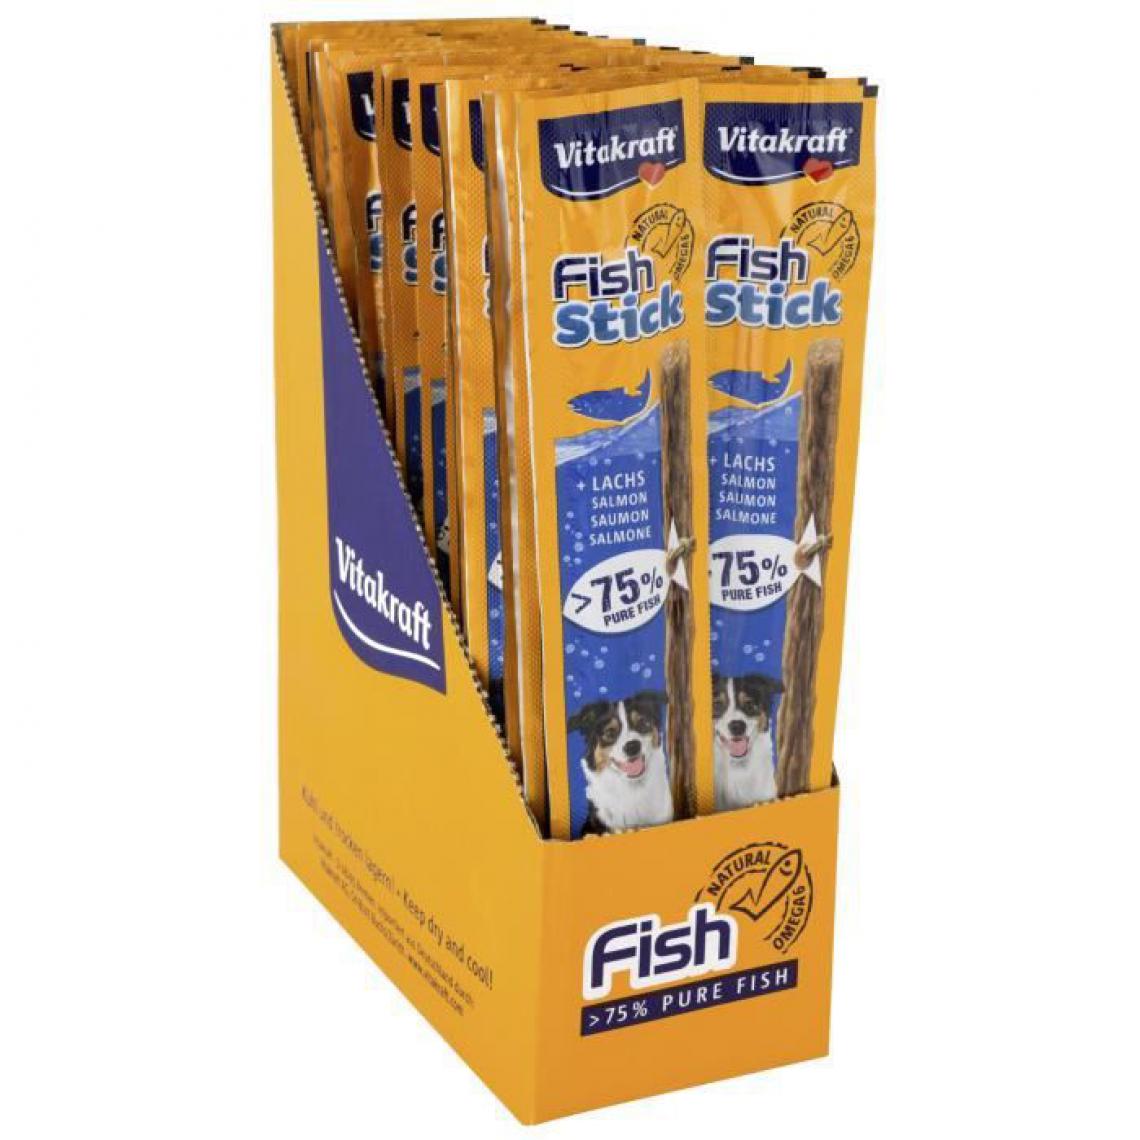 Vitakraft - VITAKRAFT Fish Stick Friandise pour chien au poisson - Lot de 50 stick de 15g - Croquettes pour chien